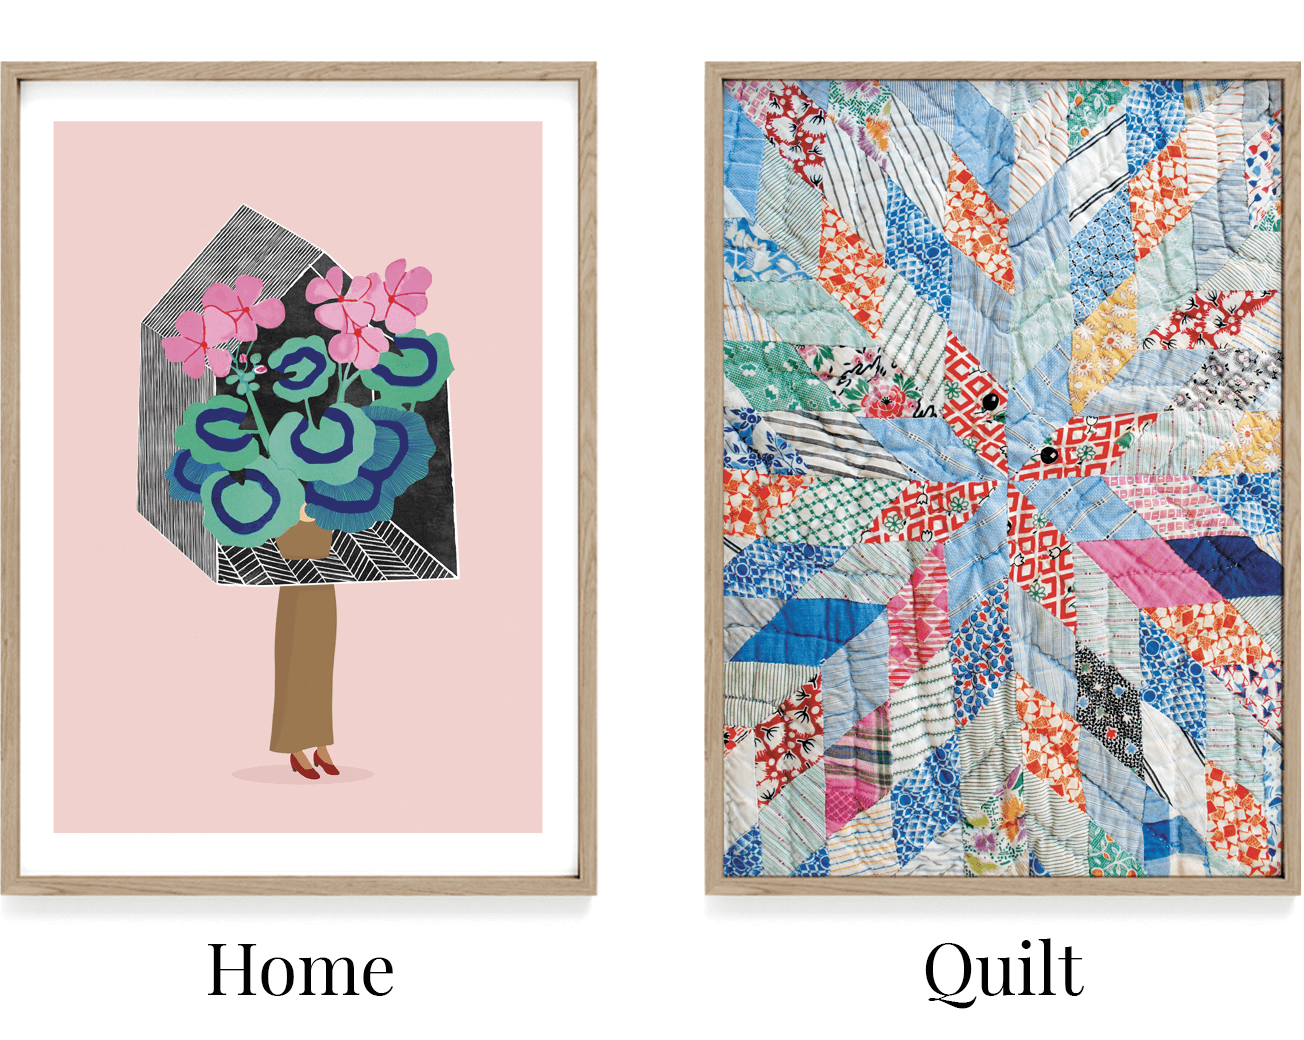 Plakat med pige og hus. Home plakat. Plaktat med patchwork. Patchwork i  boligen.